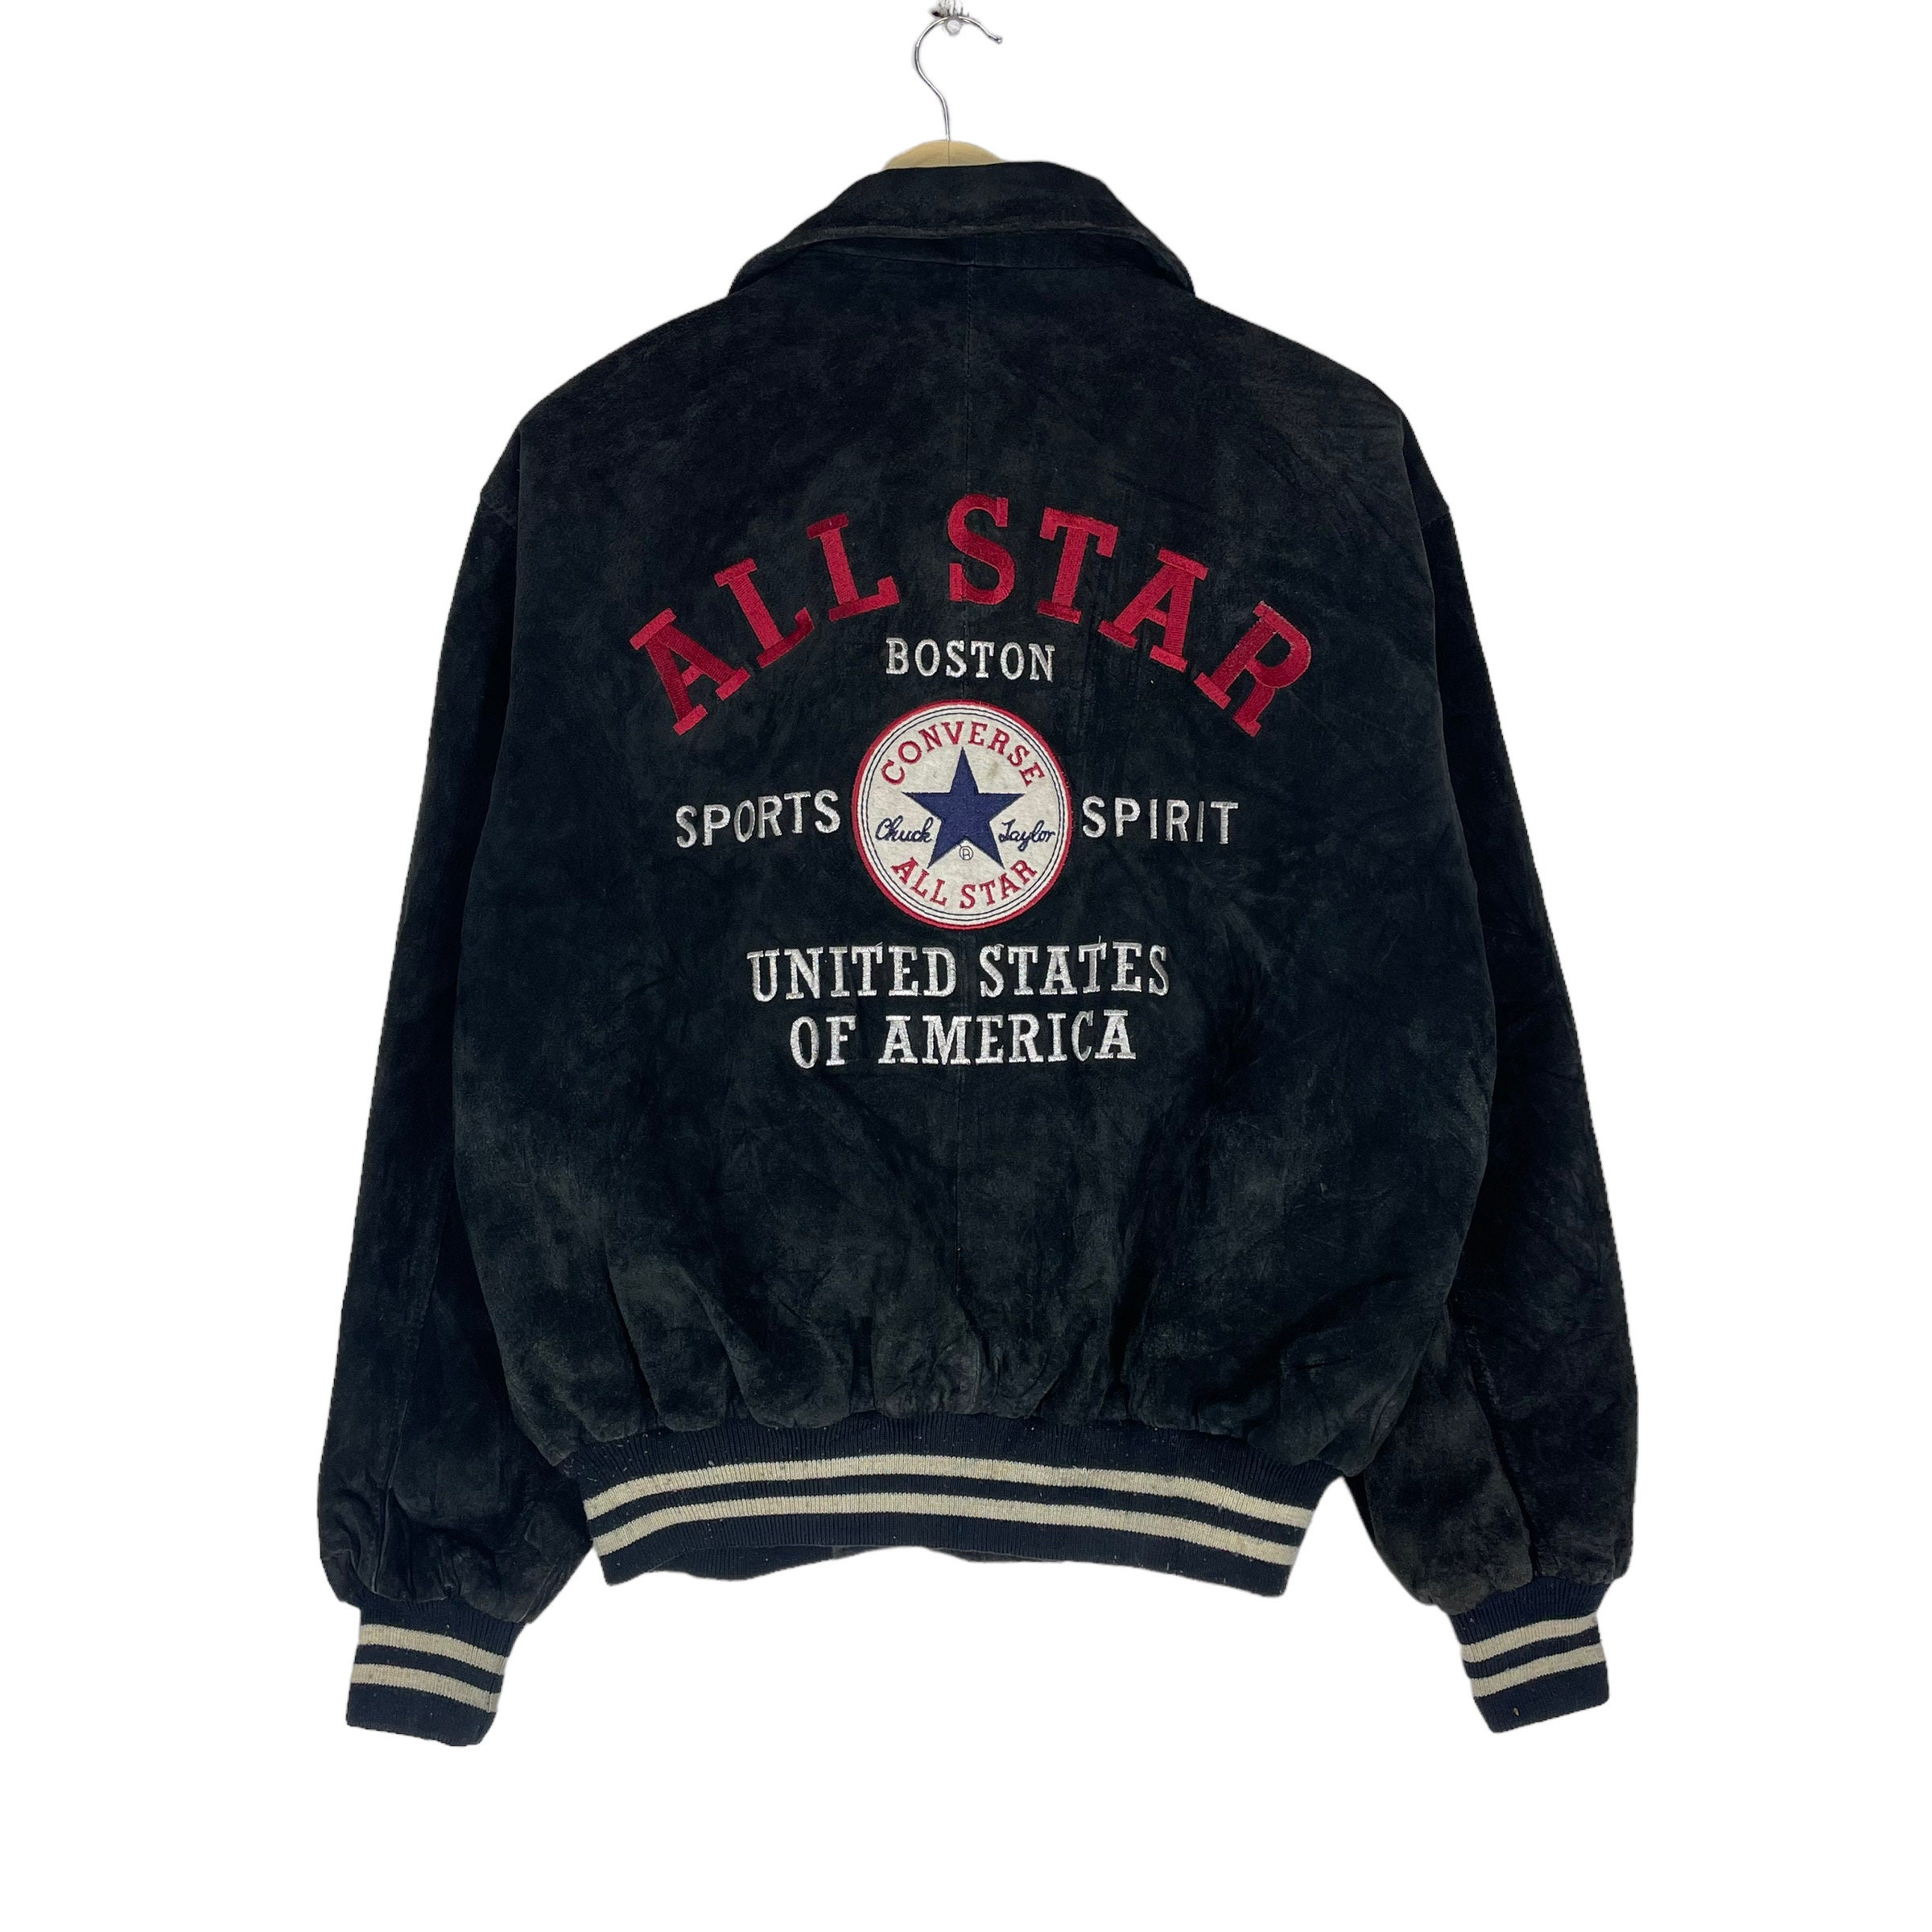 Vintage Converse All Star Chuck Taylor Varsity Coach Jacket 